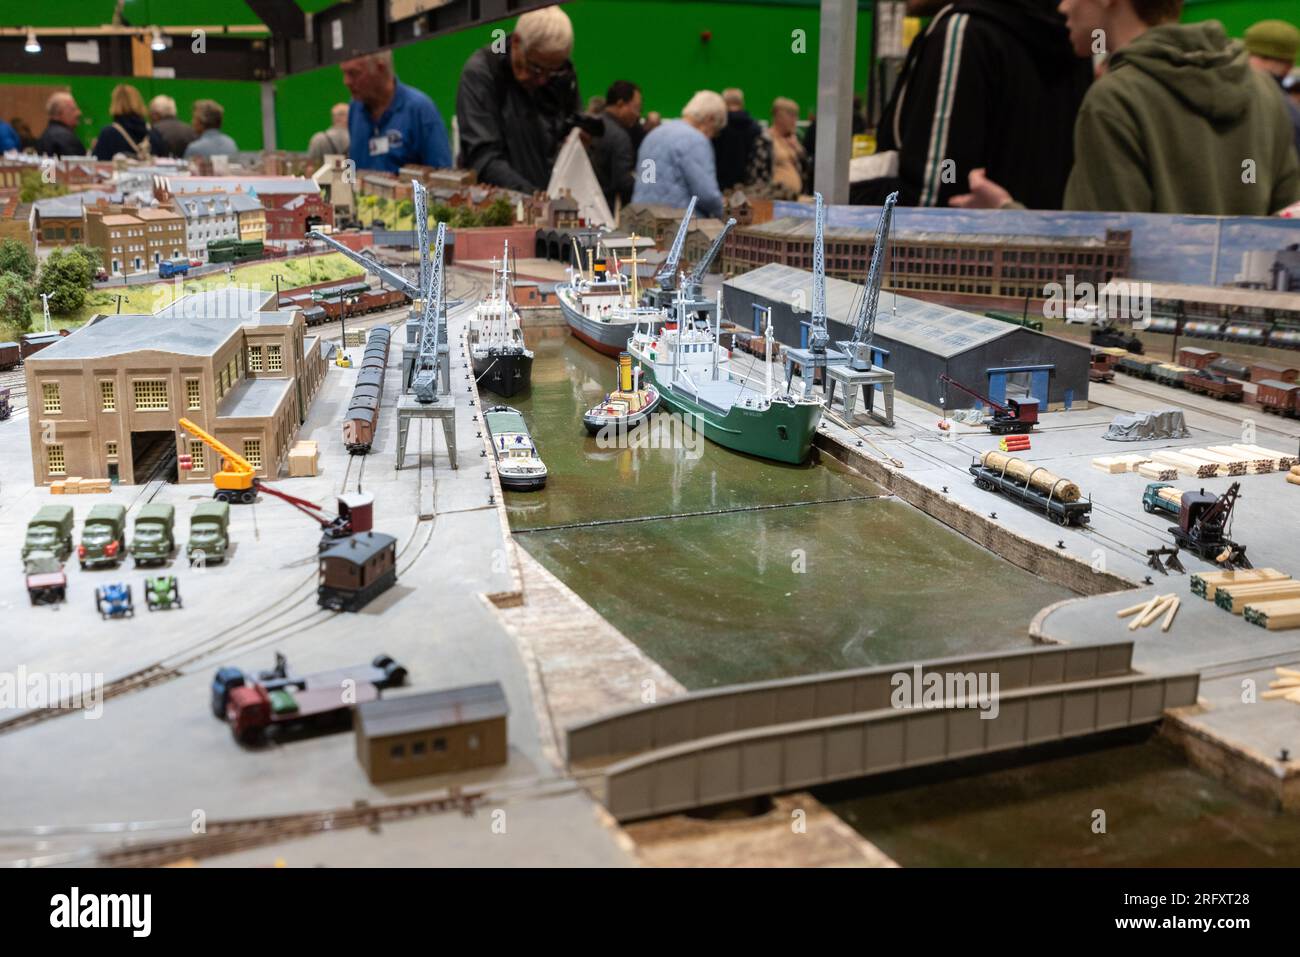 James Street mostra di modello ferroviario a scartamento N in mostra in una mostra di modellini ferroviari a Essex, Regno Unito. Grande ferrovia dell'era del vapore Foto Stock